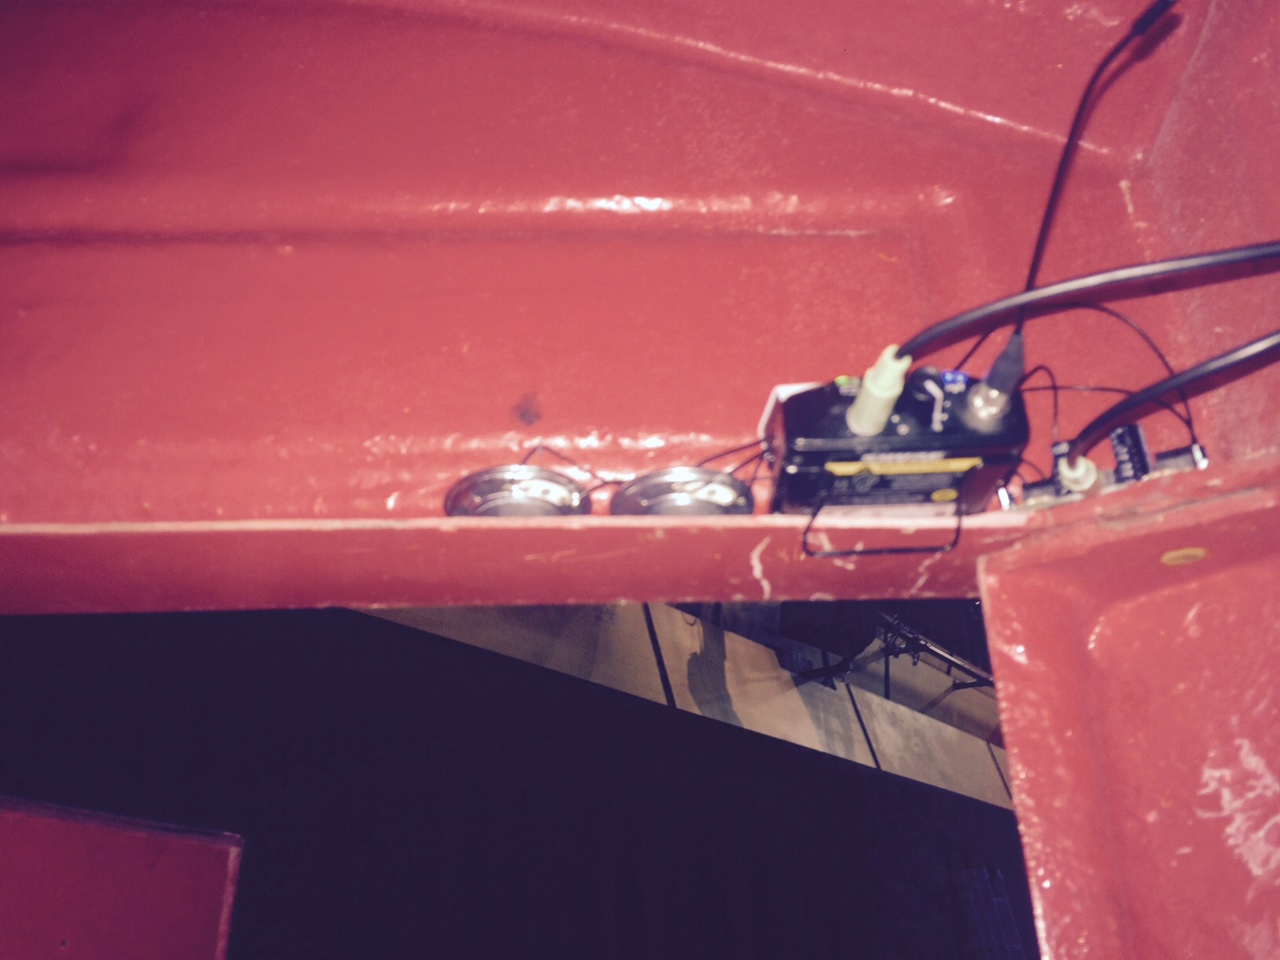 speaker rig in Phonoe box from below